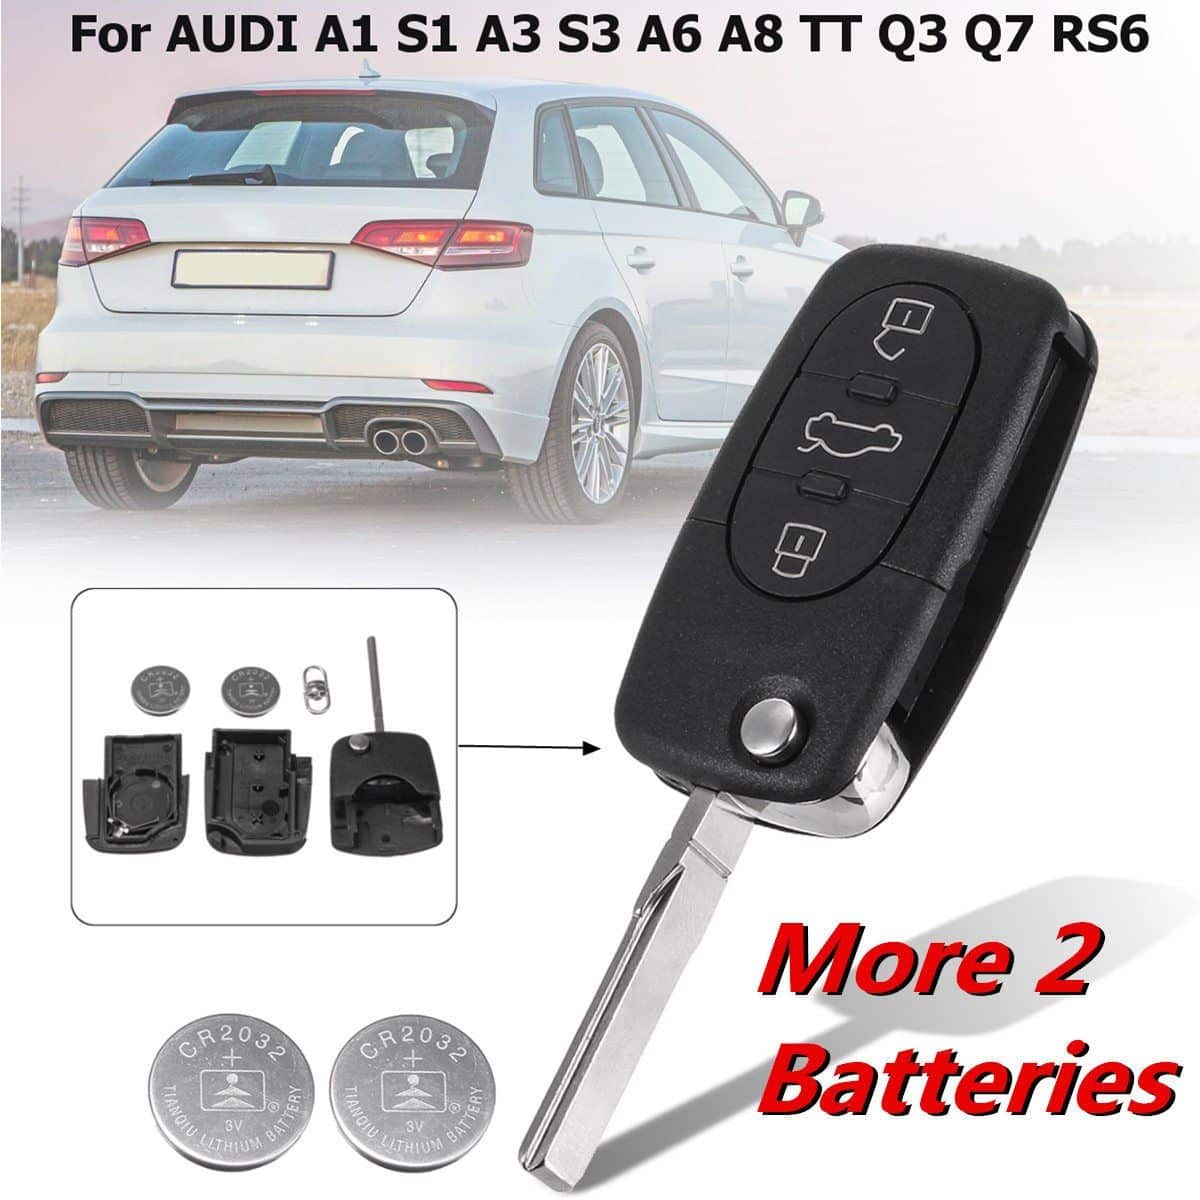 Audi Q7 Key Fob Battery Change